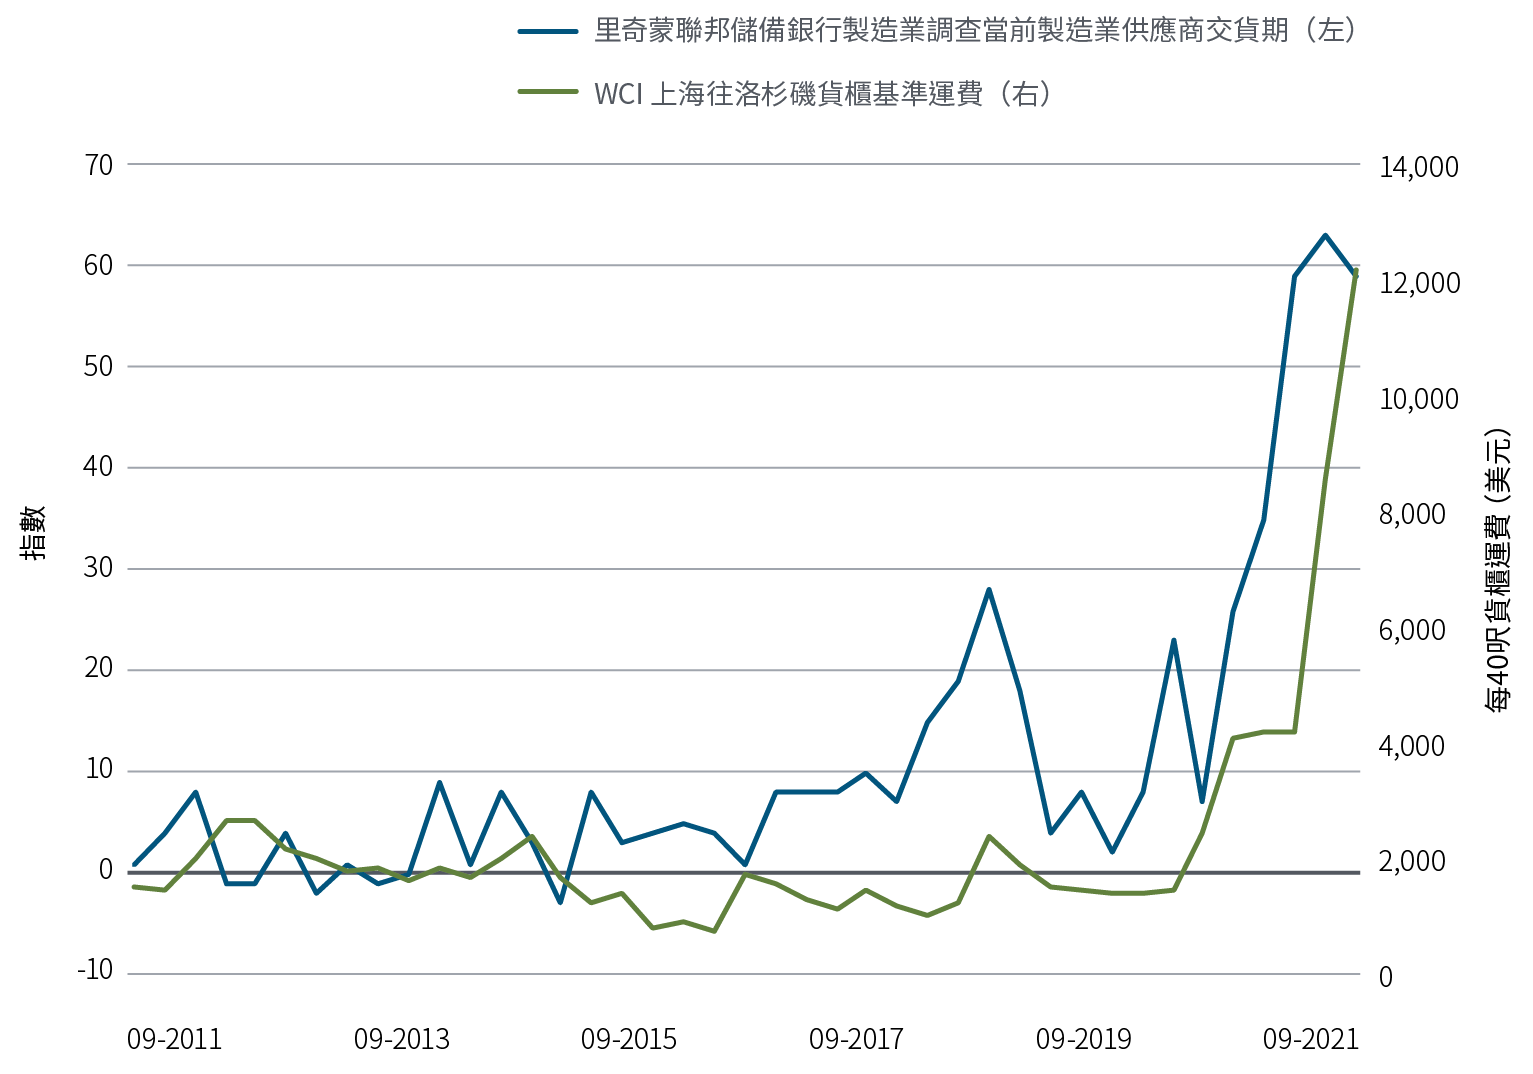 圖3以折線圖顯示兩組由2011年9月至2021年9月的數據。期內，里奇蒙聯邦儲備銀行製造業調查指數當前製造業供應商交貨期由1升至59，當中曾多次升跌，但從2020年開始顯著上揚，並於2021年6月升至63的高位。WCI上海往洛杉磯貨櫃基準運費由2011年9月的1,524美元升至2021年9月的12,172美元，以2021年的升幅最為顯著。該數據顯示上海往洛杉磯標準40呎貨櫃的平均運費。